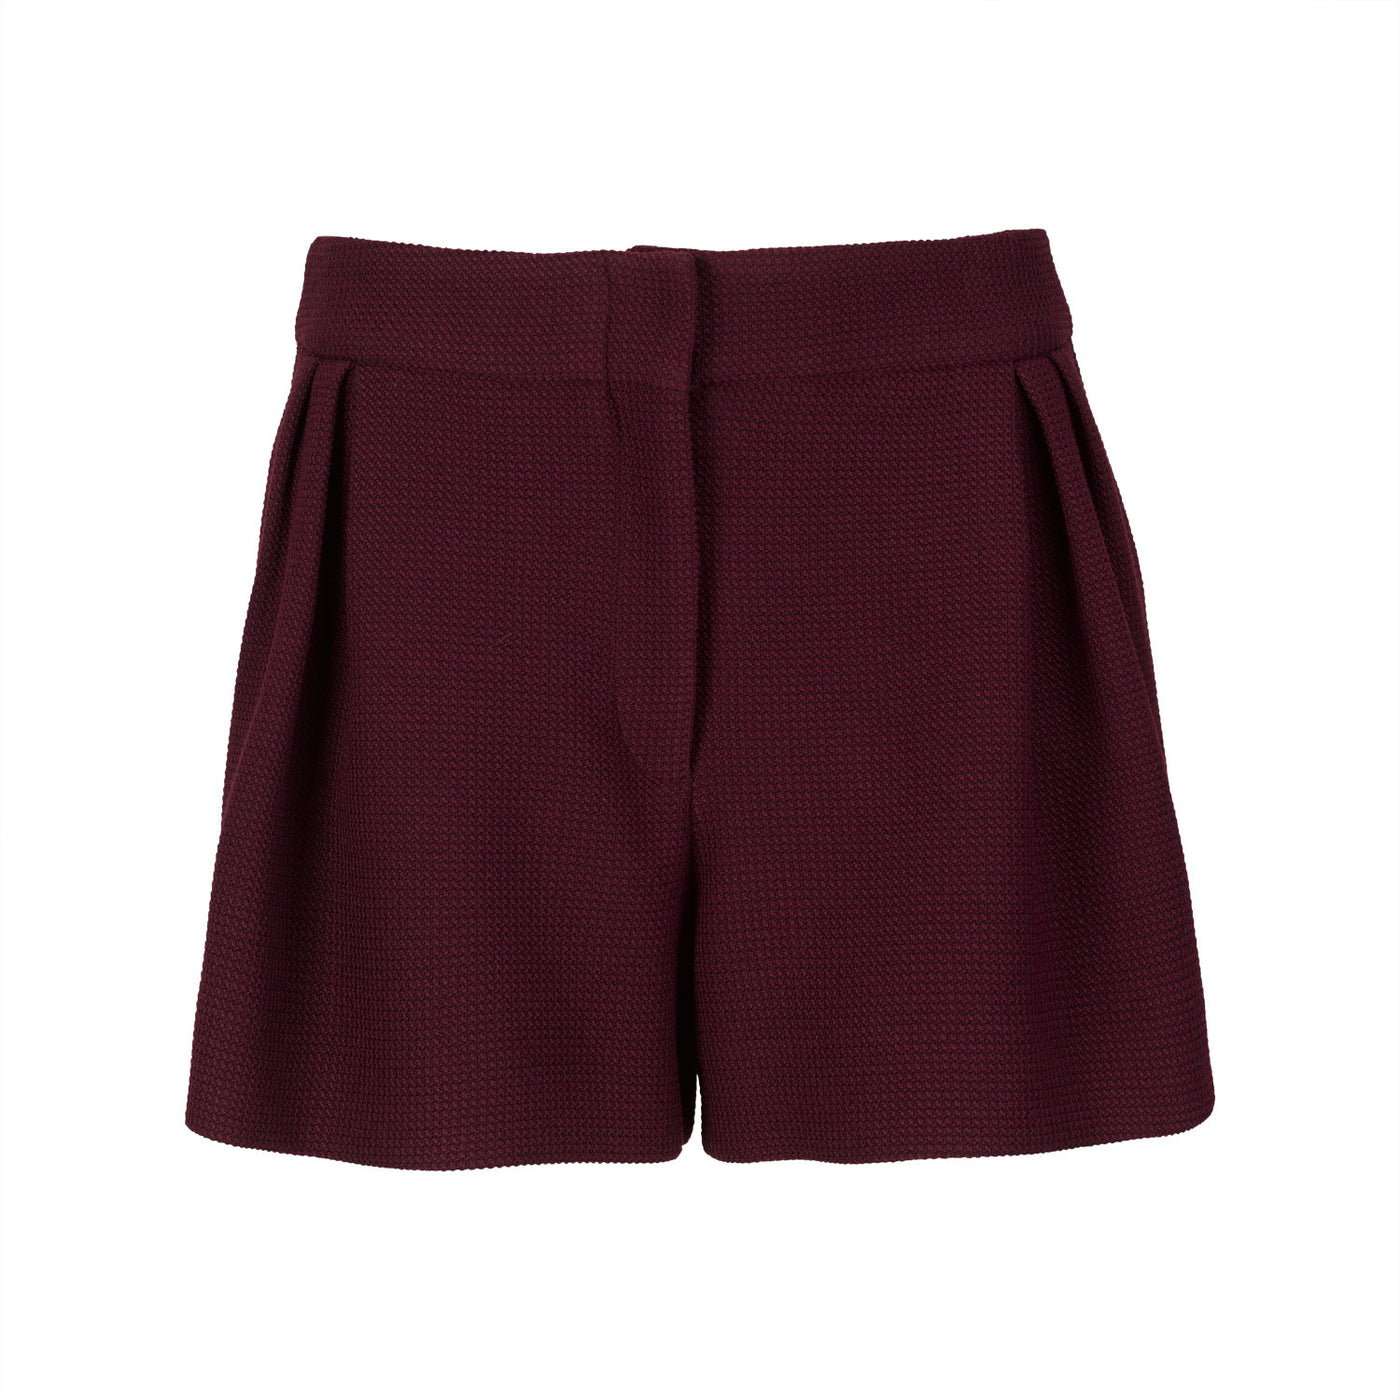 Bordeaux Piqué Knit Shorts with Pleats